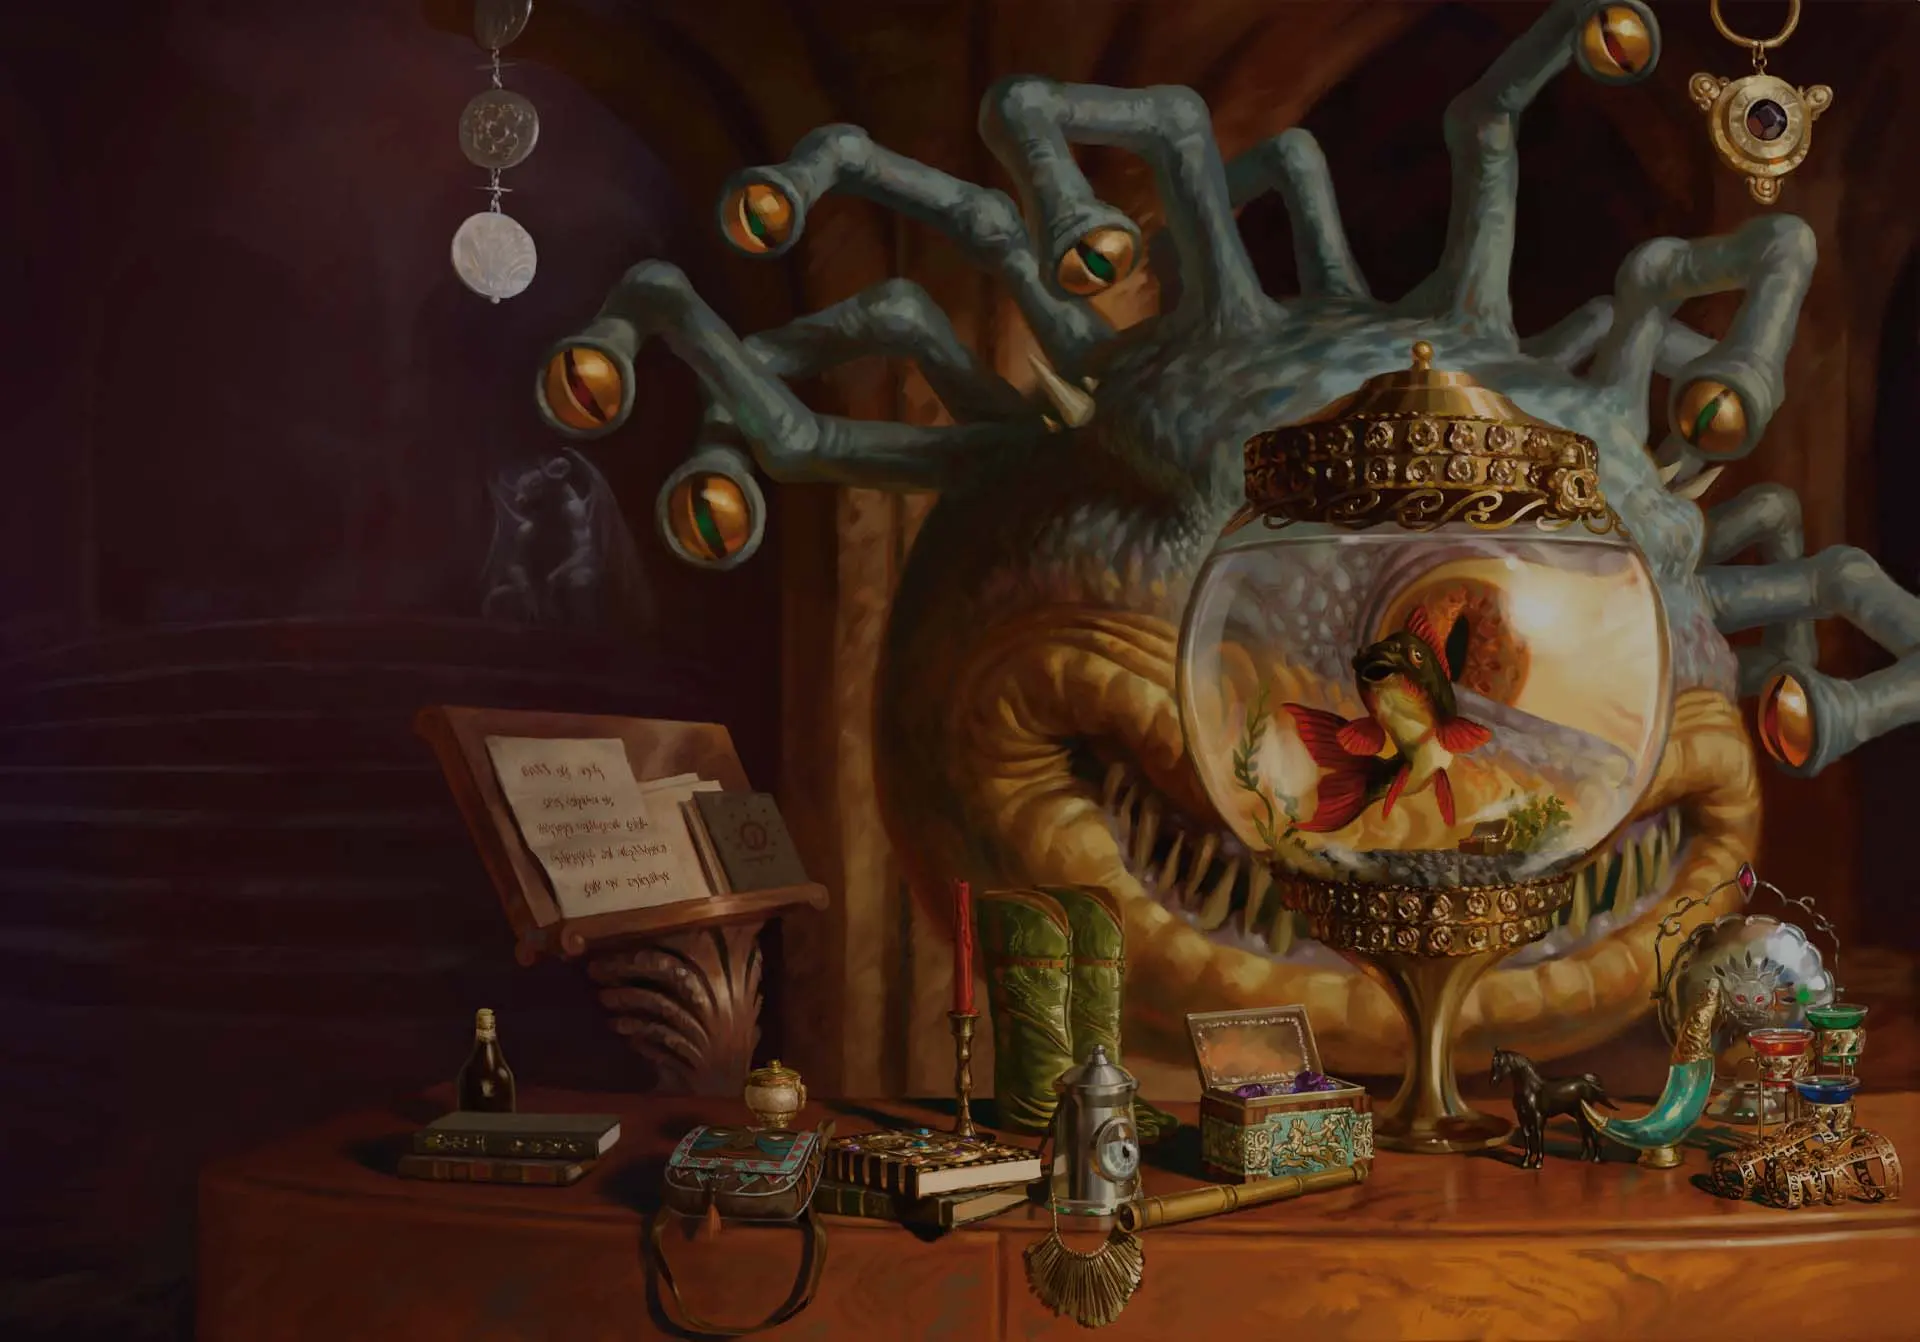 Magic: The Gathering tendrá nueva extensión de Leyendas de Commander inspirada en Dungeons & Dragon